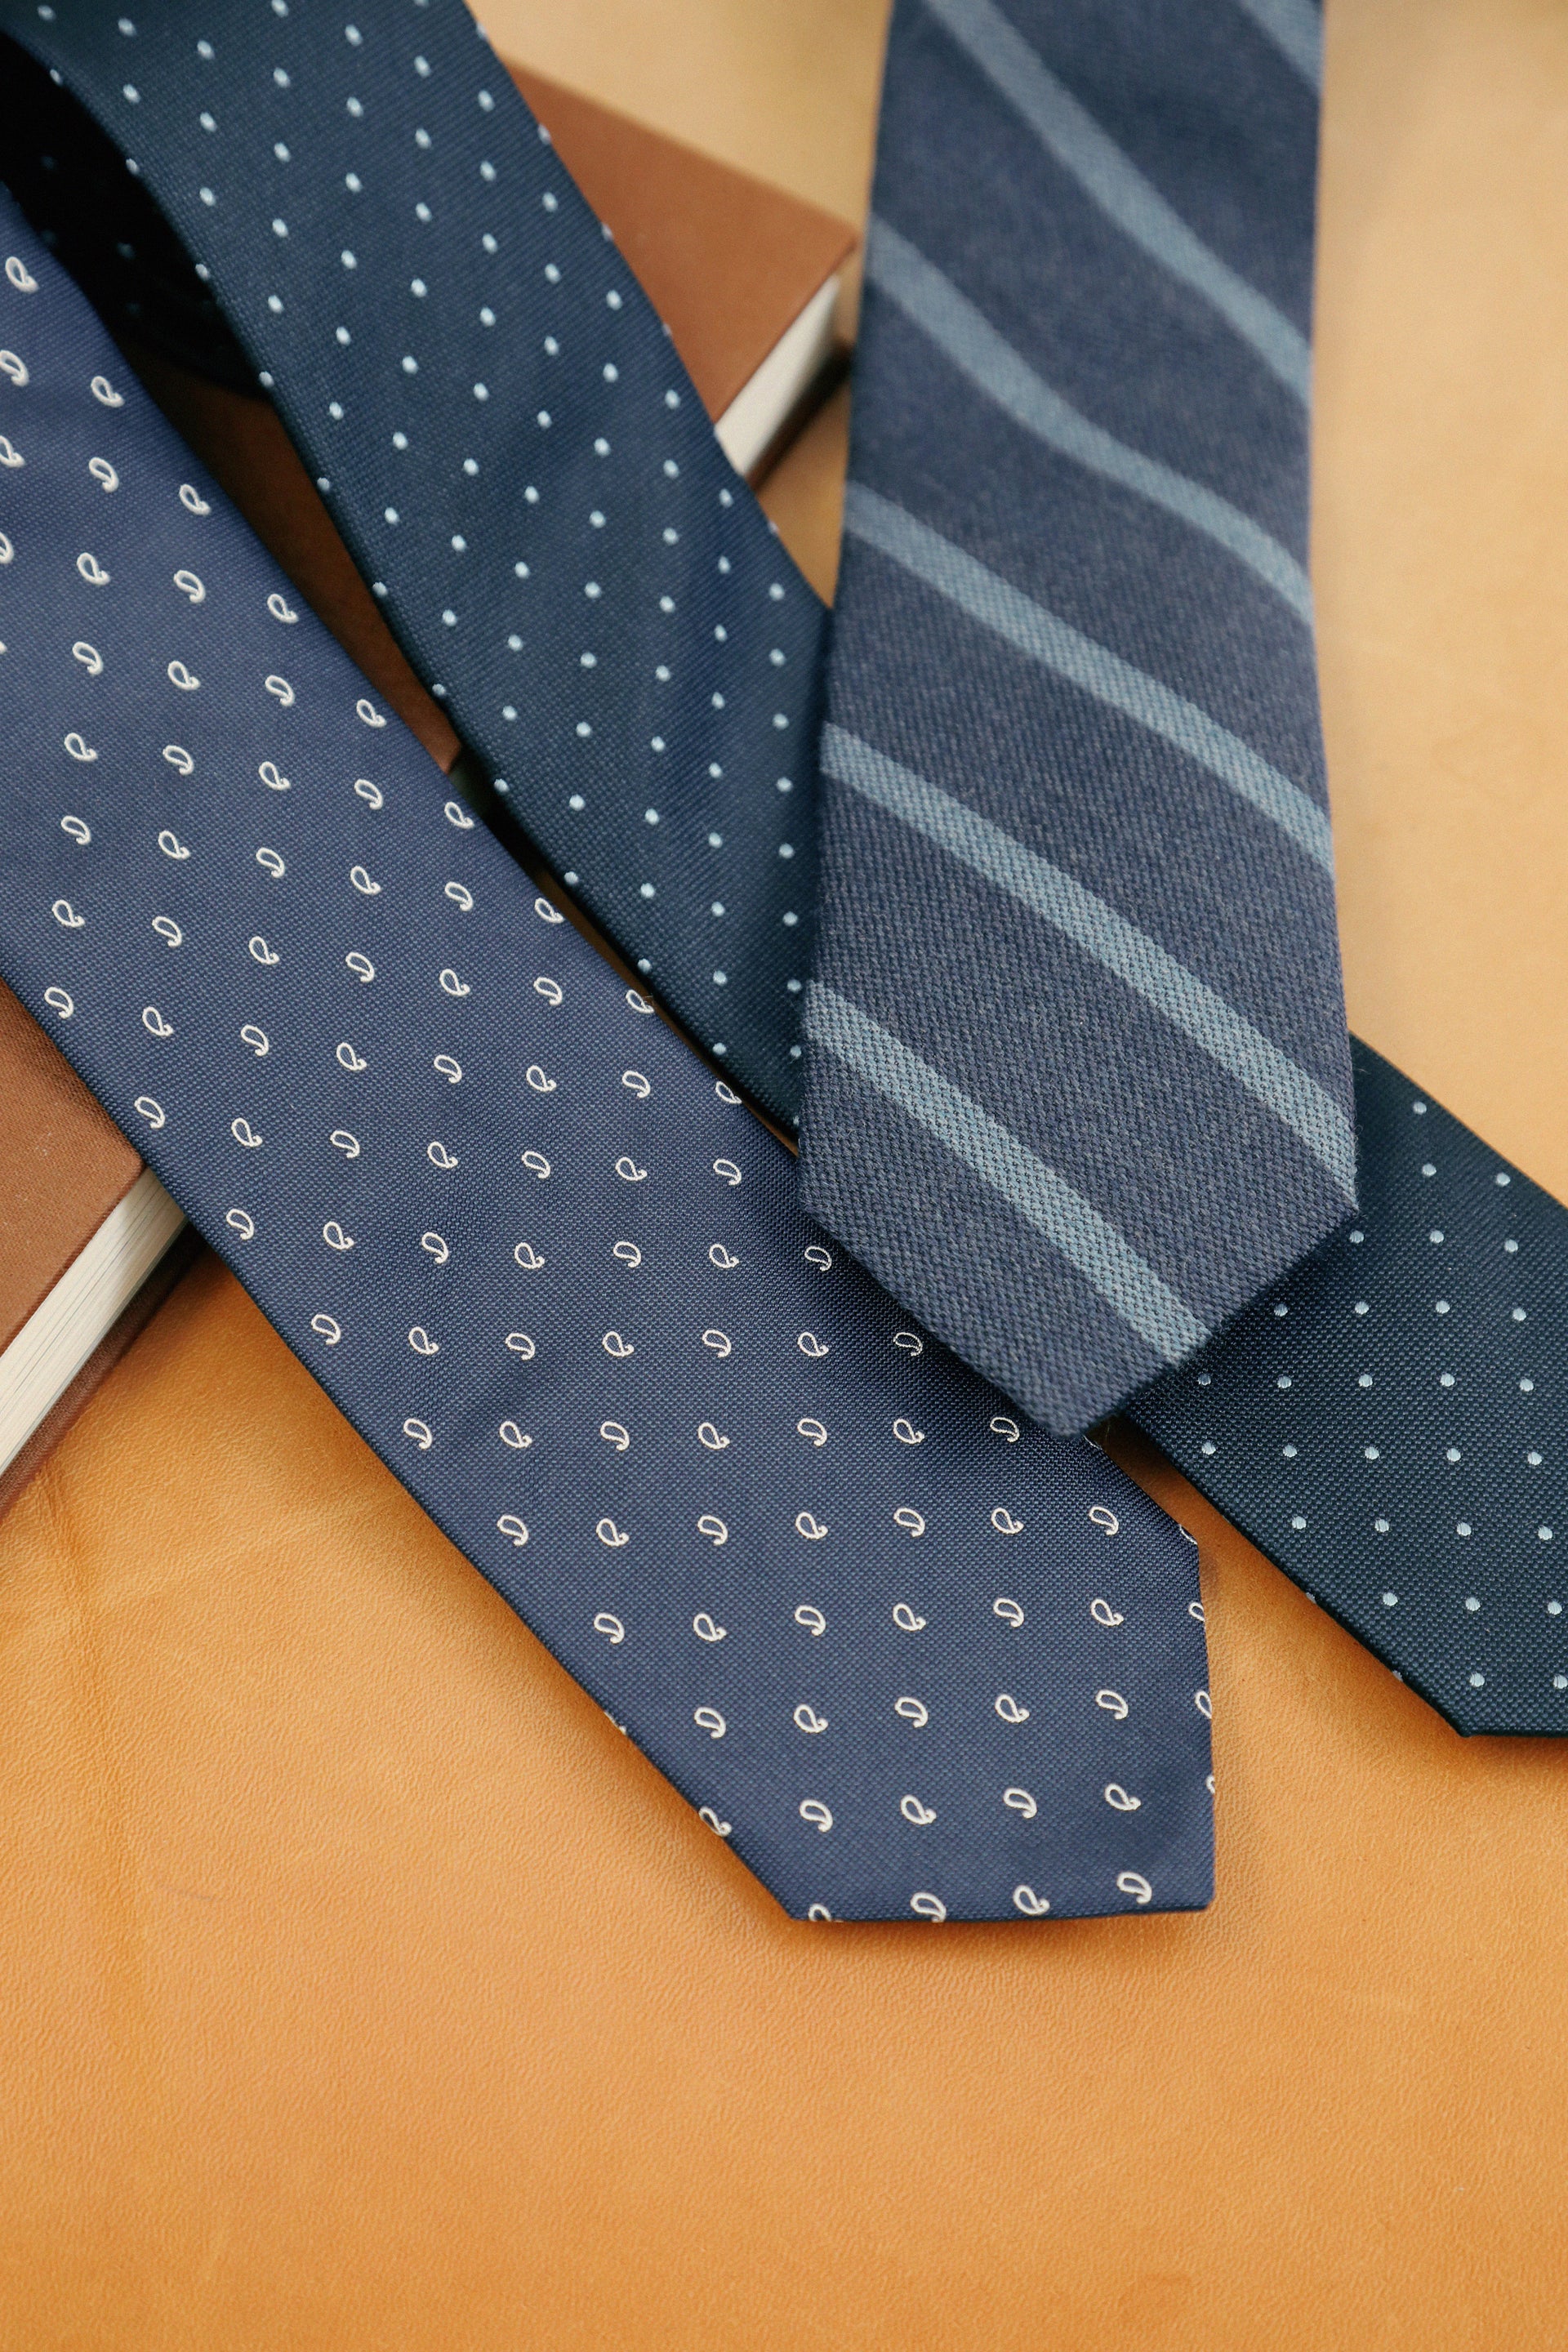 Quelles sont les bonnes dimensions d'une cravate ? - Les Nouveaux Ateliers